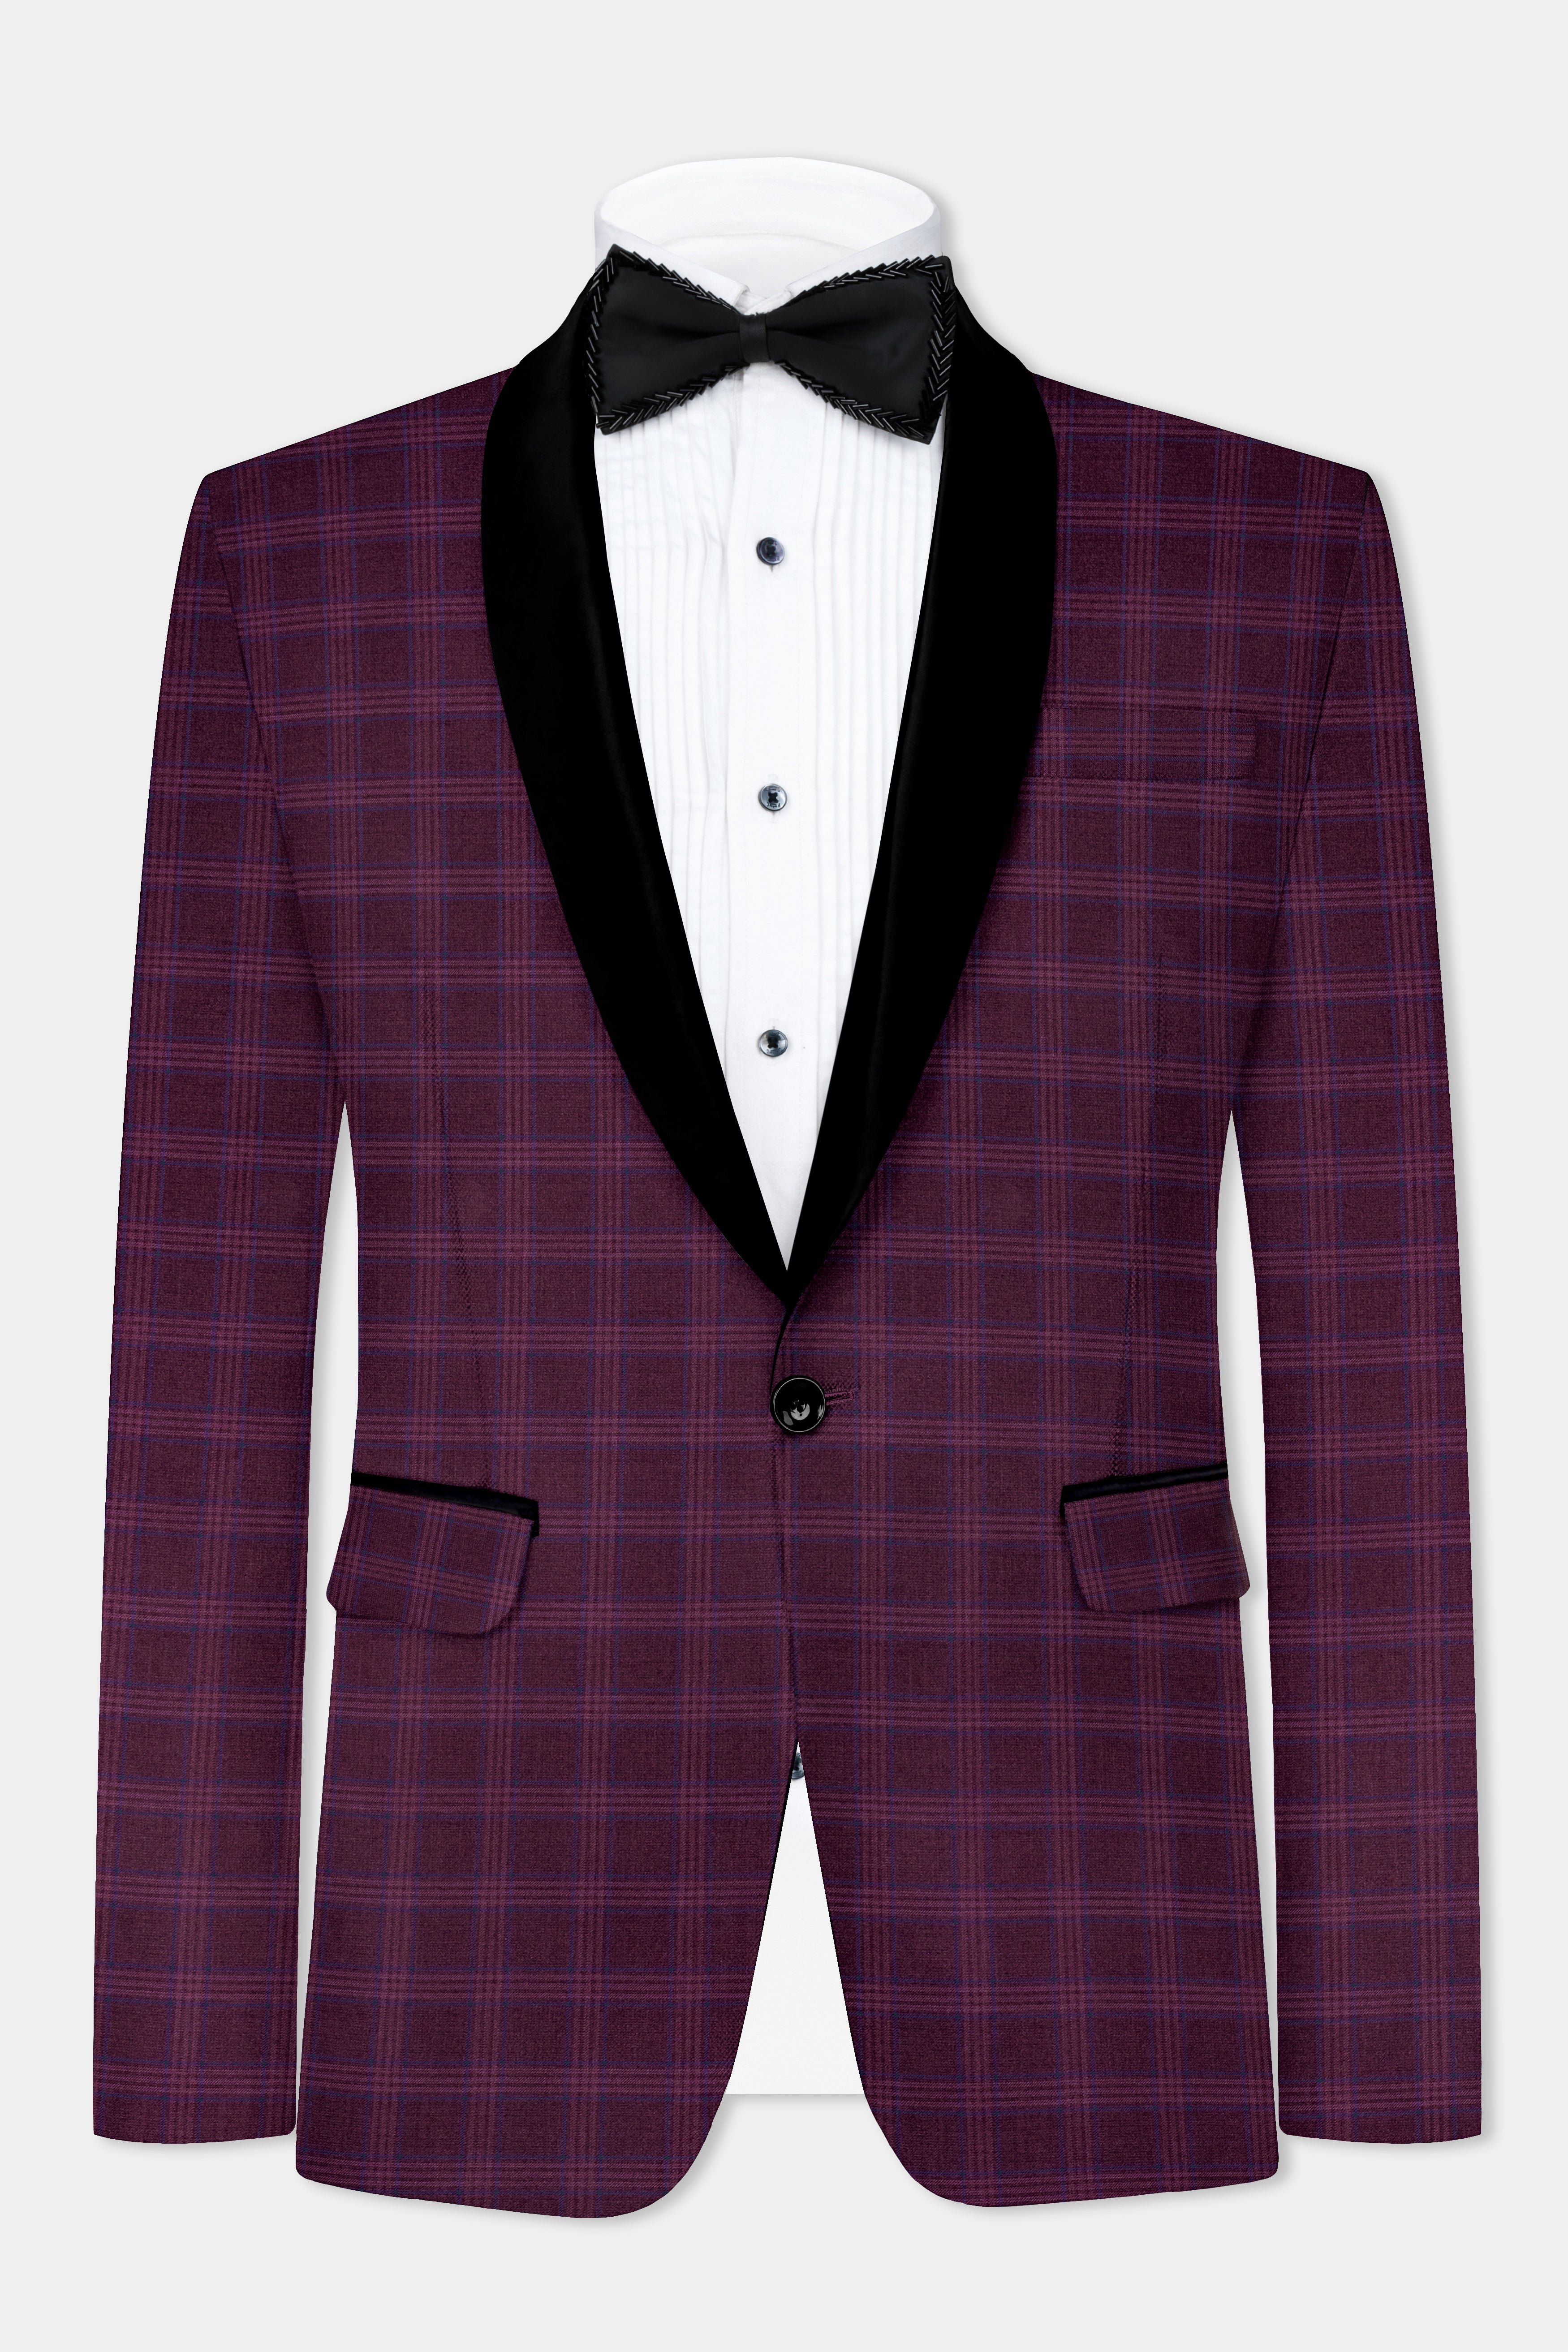 Eclipse Wine Plaid Tuxedo Suit